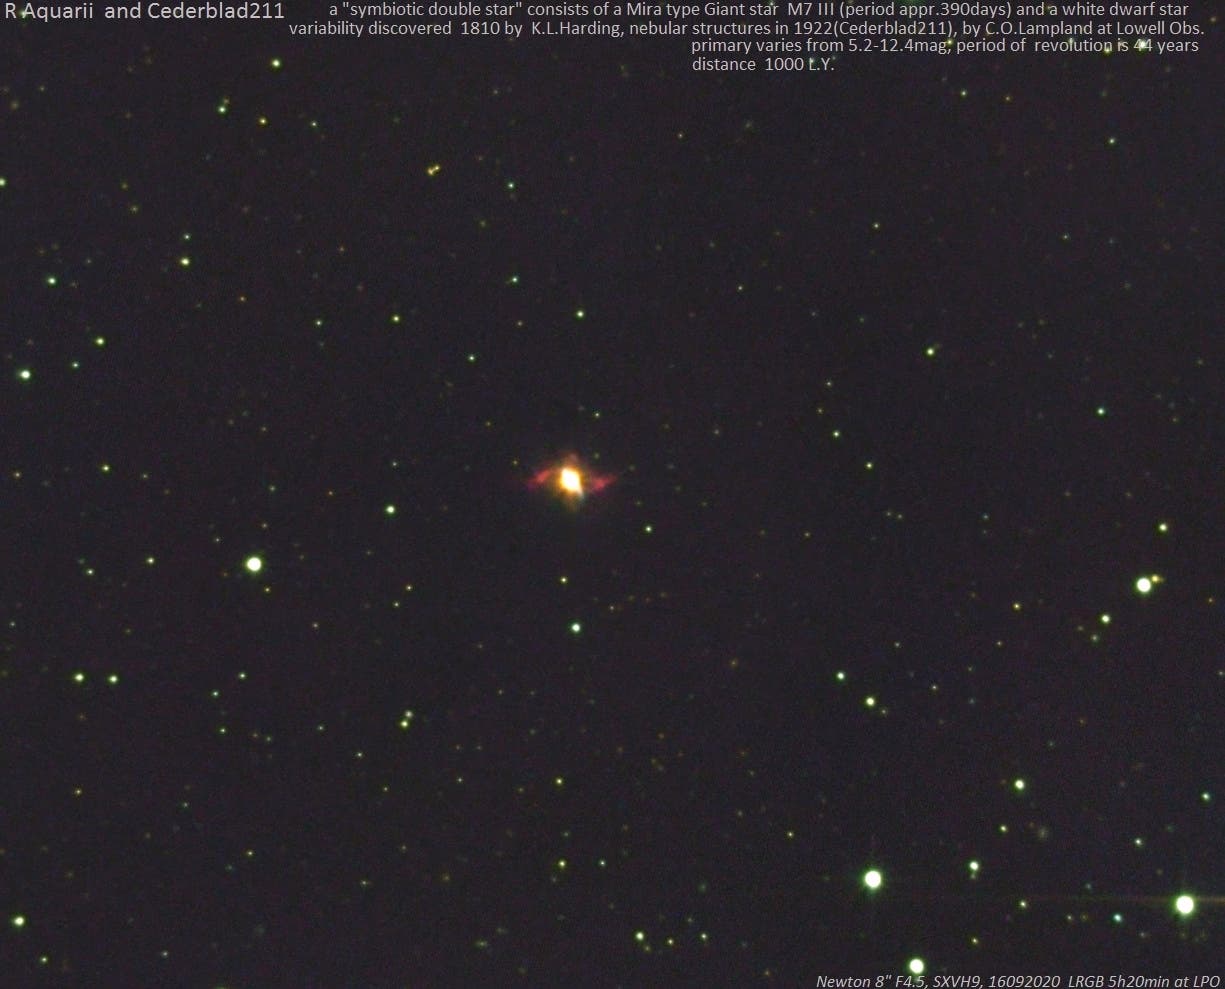 Der symbiotische Stern R Aquarii mit Cederblad 211